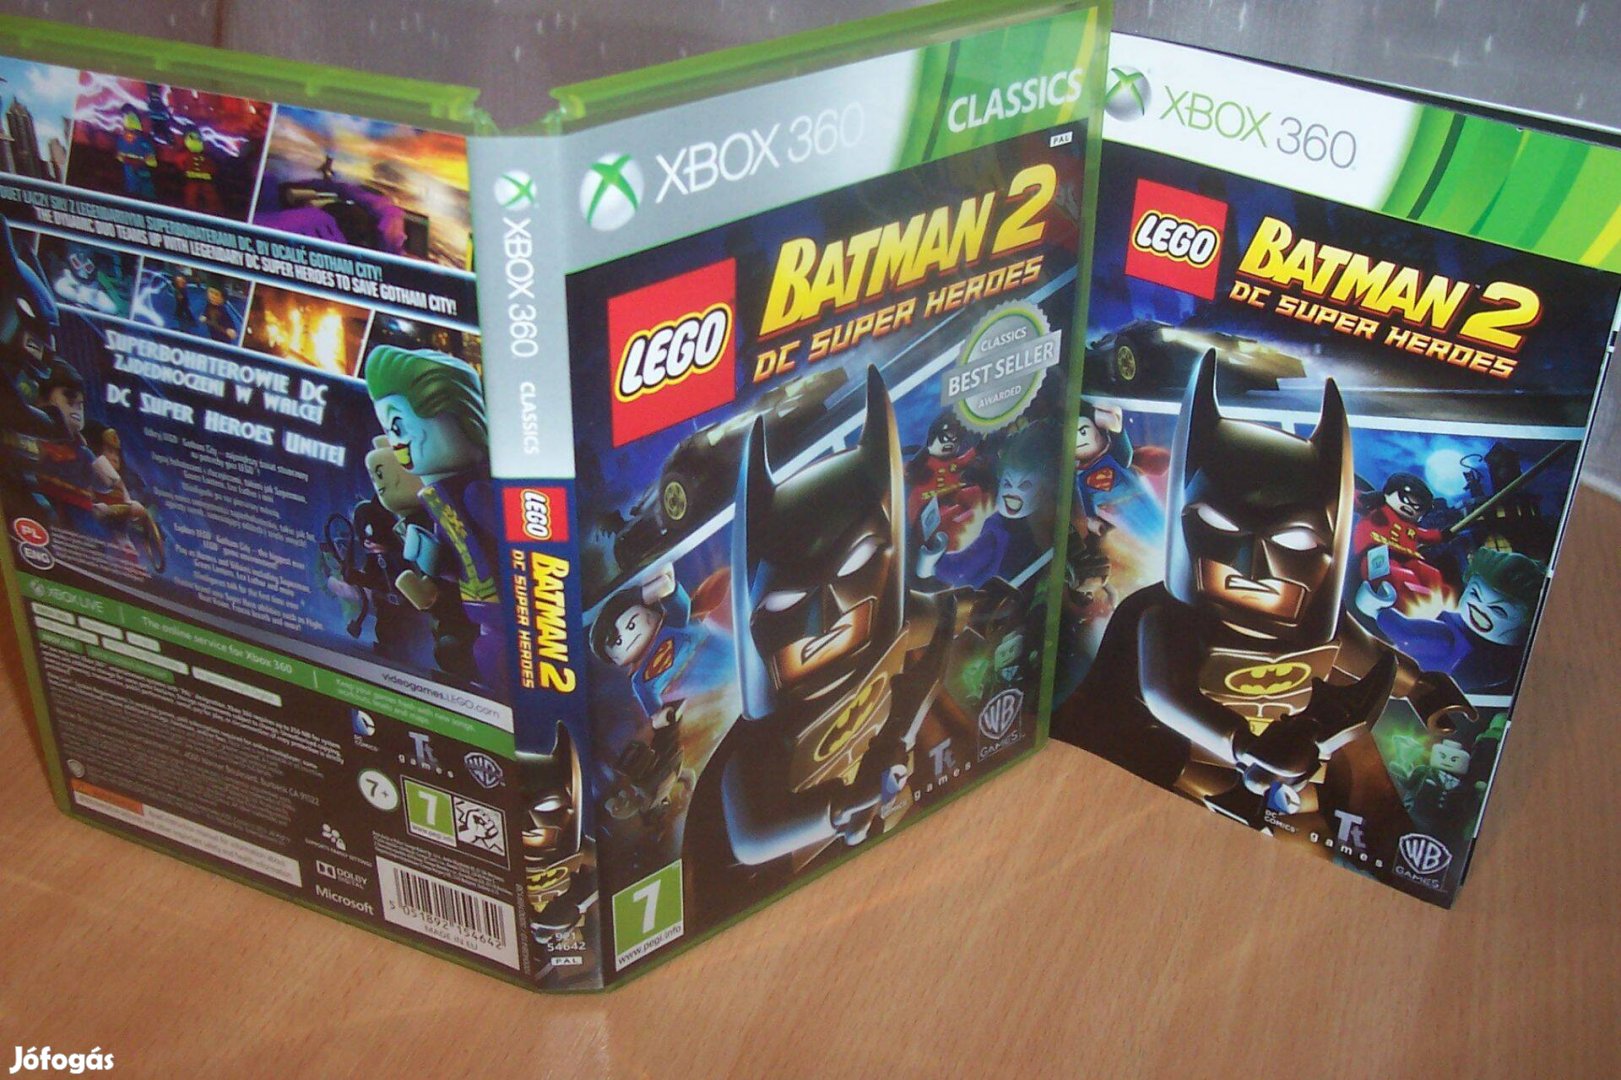 LEGO Batman 2: DC Super Heroes - eredeti xbox360 játék